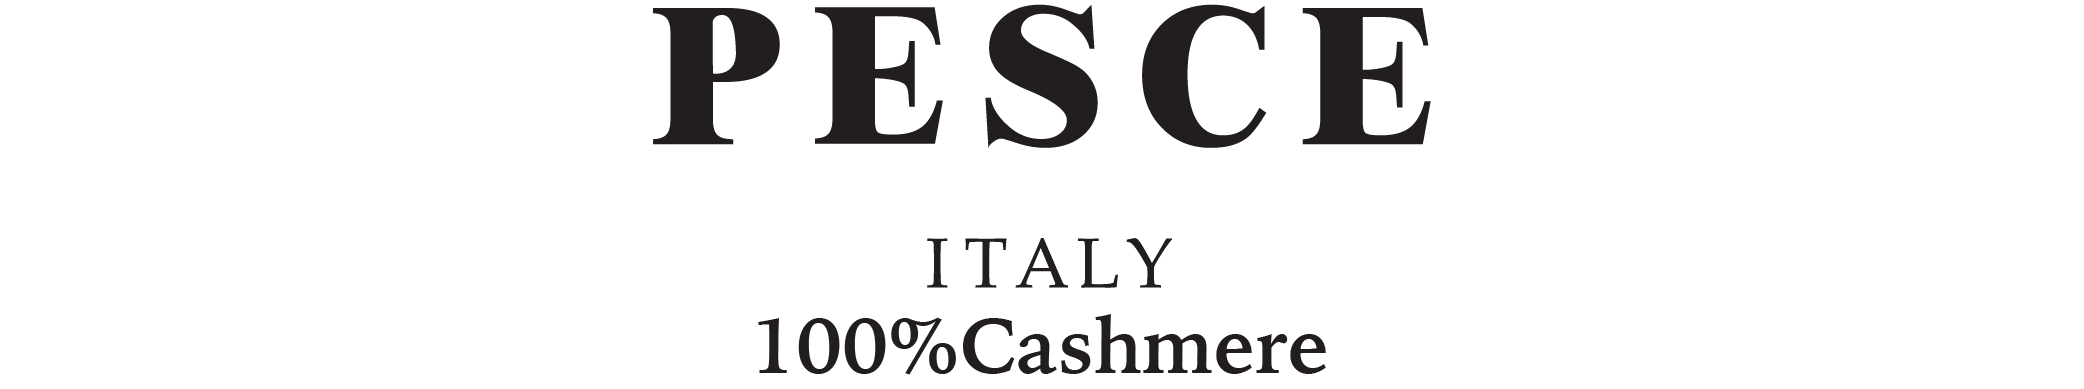 100% CASHMERE 喀什米爾 | PESCE 專櫃 義大利品牌